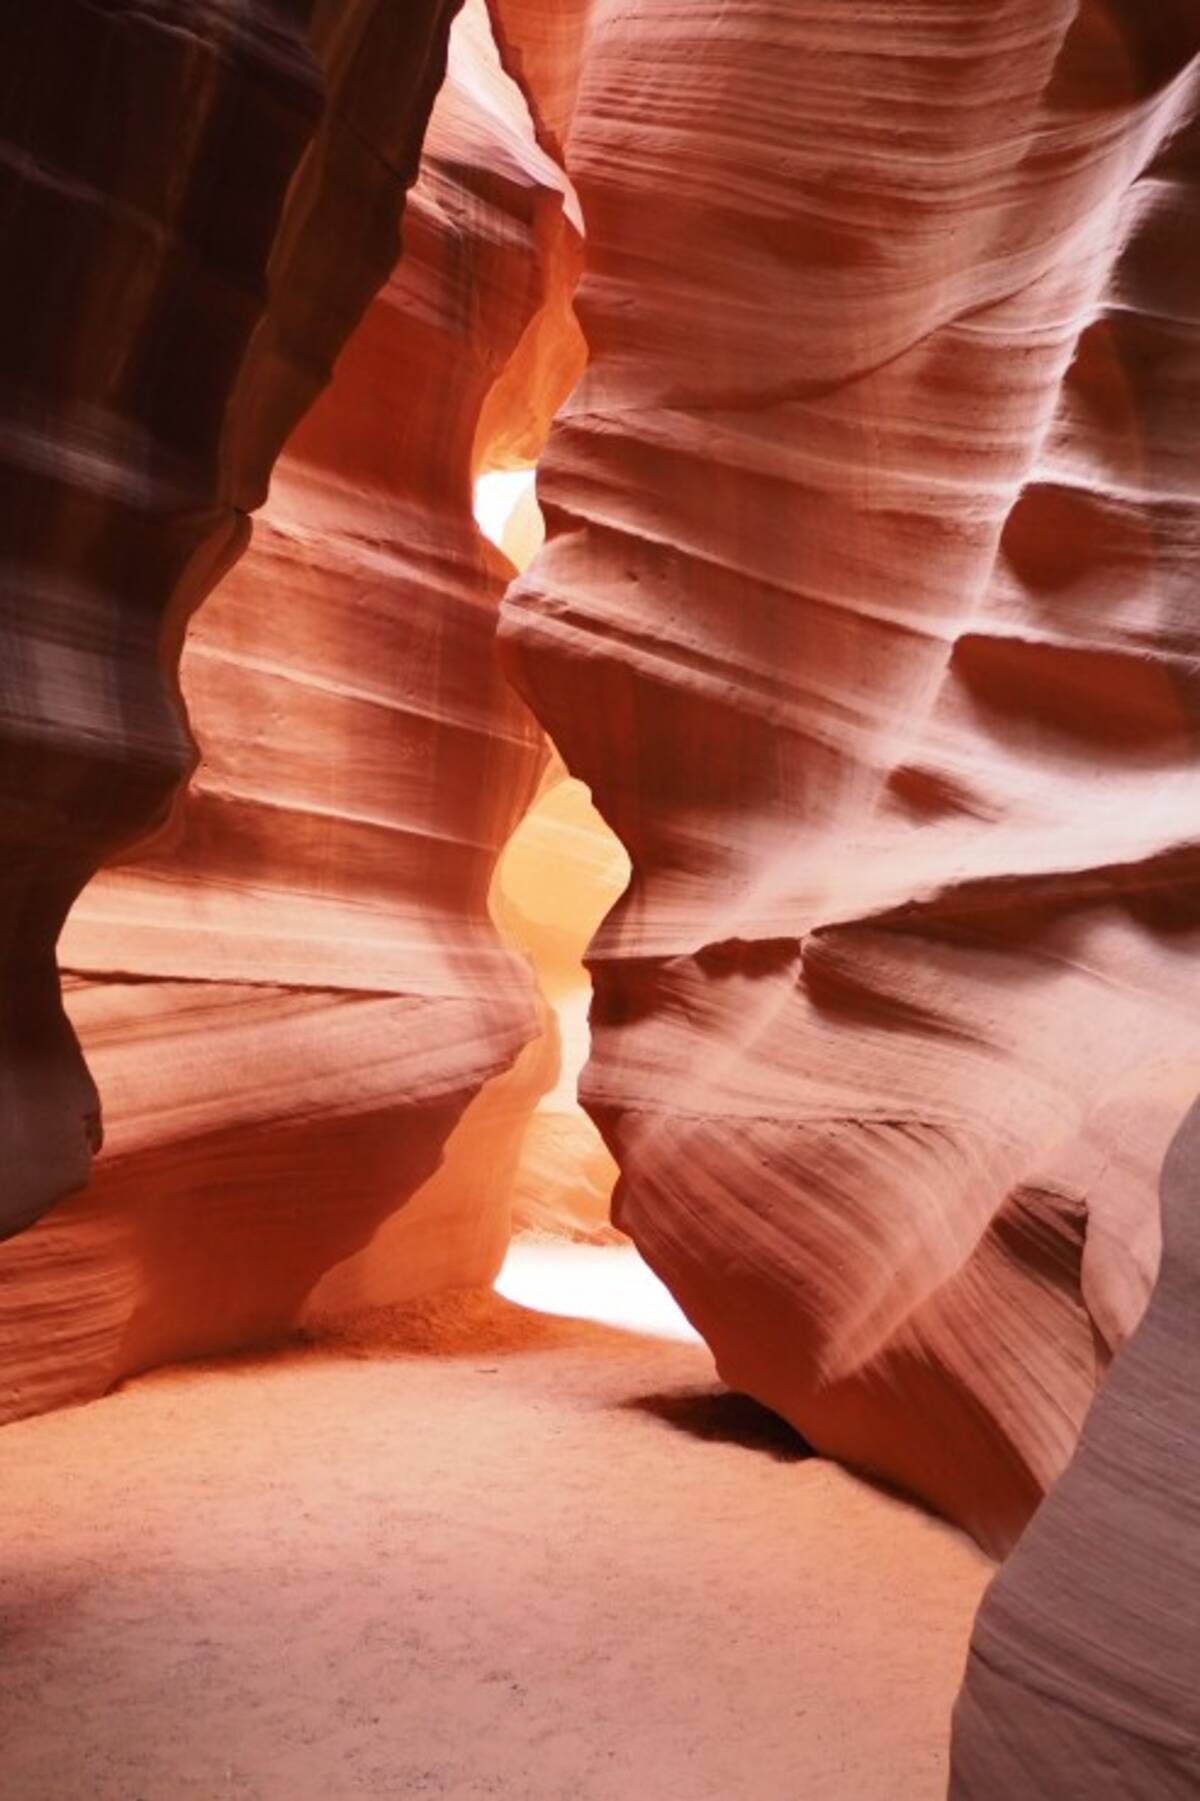 世界の絶景 アメリカ アリゾナ州 アンテロープキャニオン の魅力とは 17年2月15日 エキサイトニュース